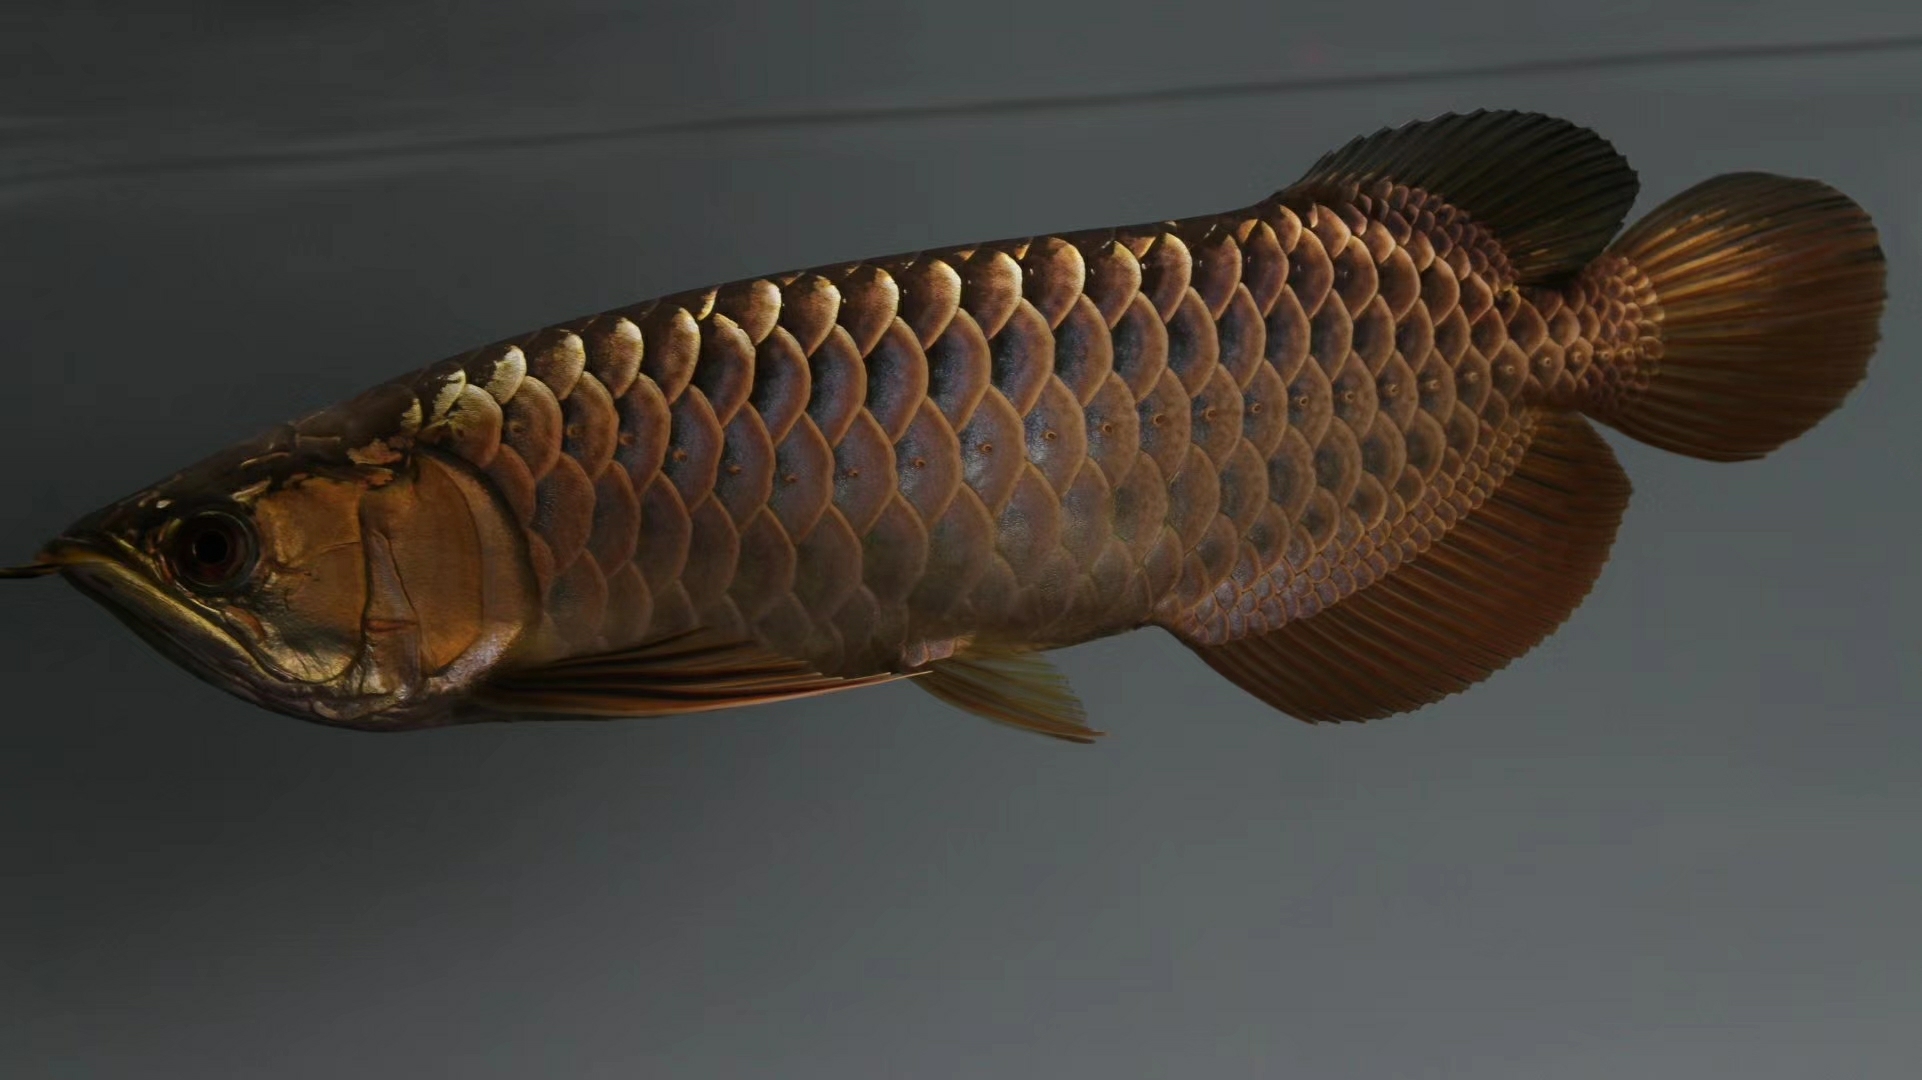 Share the next golden dragon Blue Dragon Fish ASIAN AROWANA,AROWANA,STINGRAY The1sheet